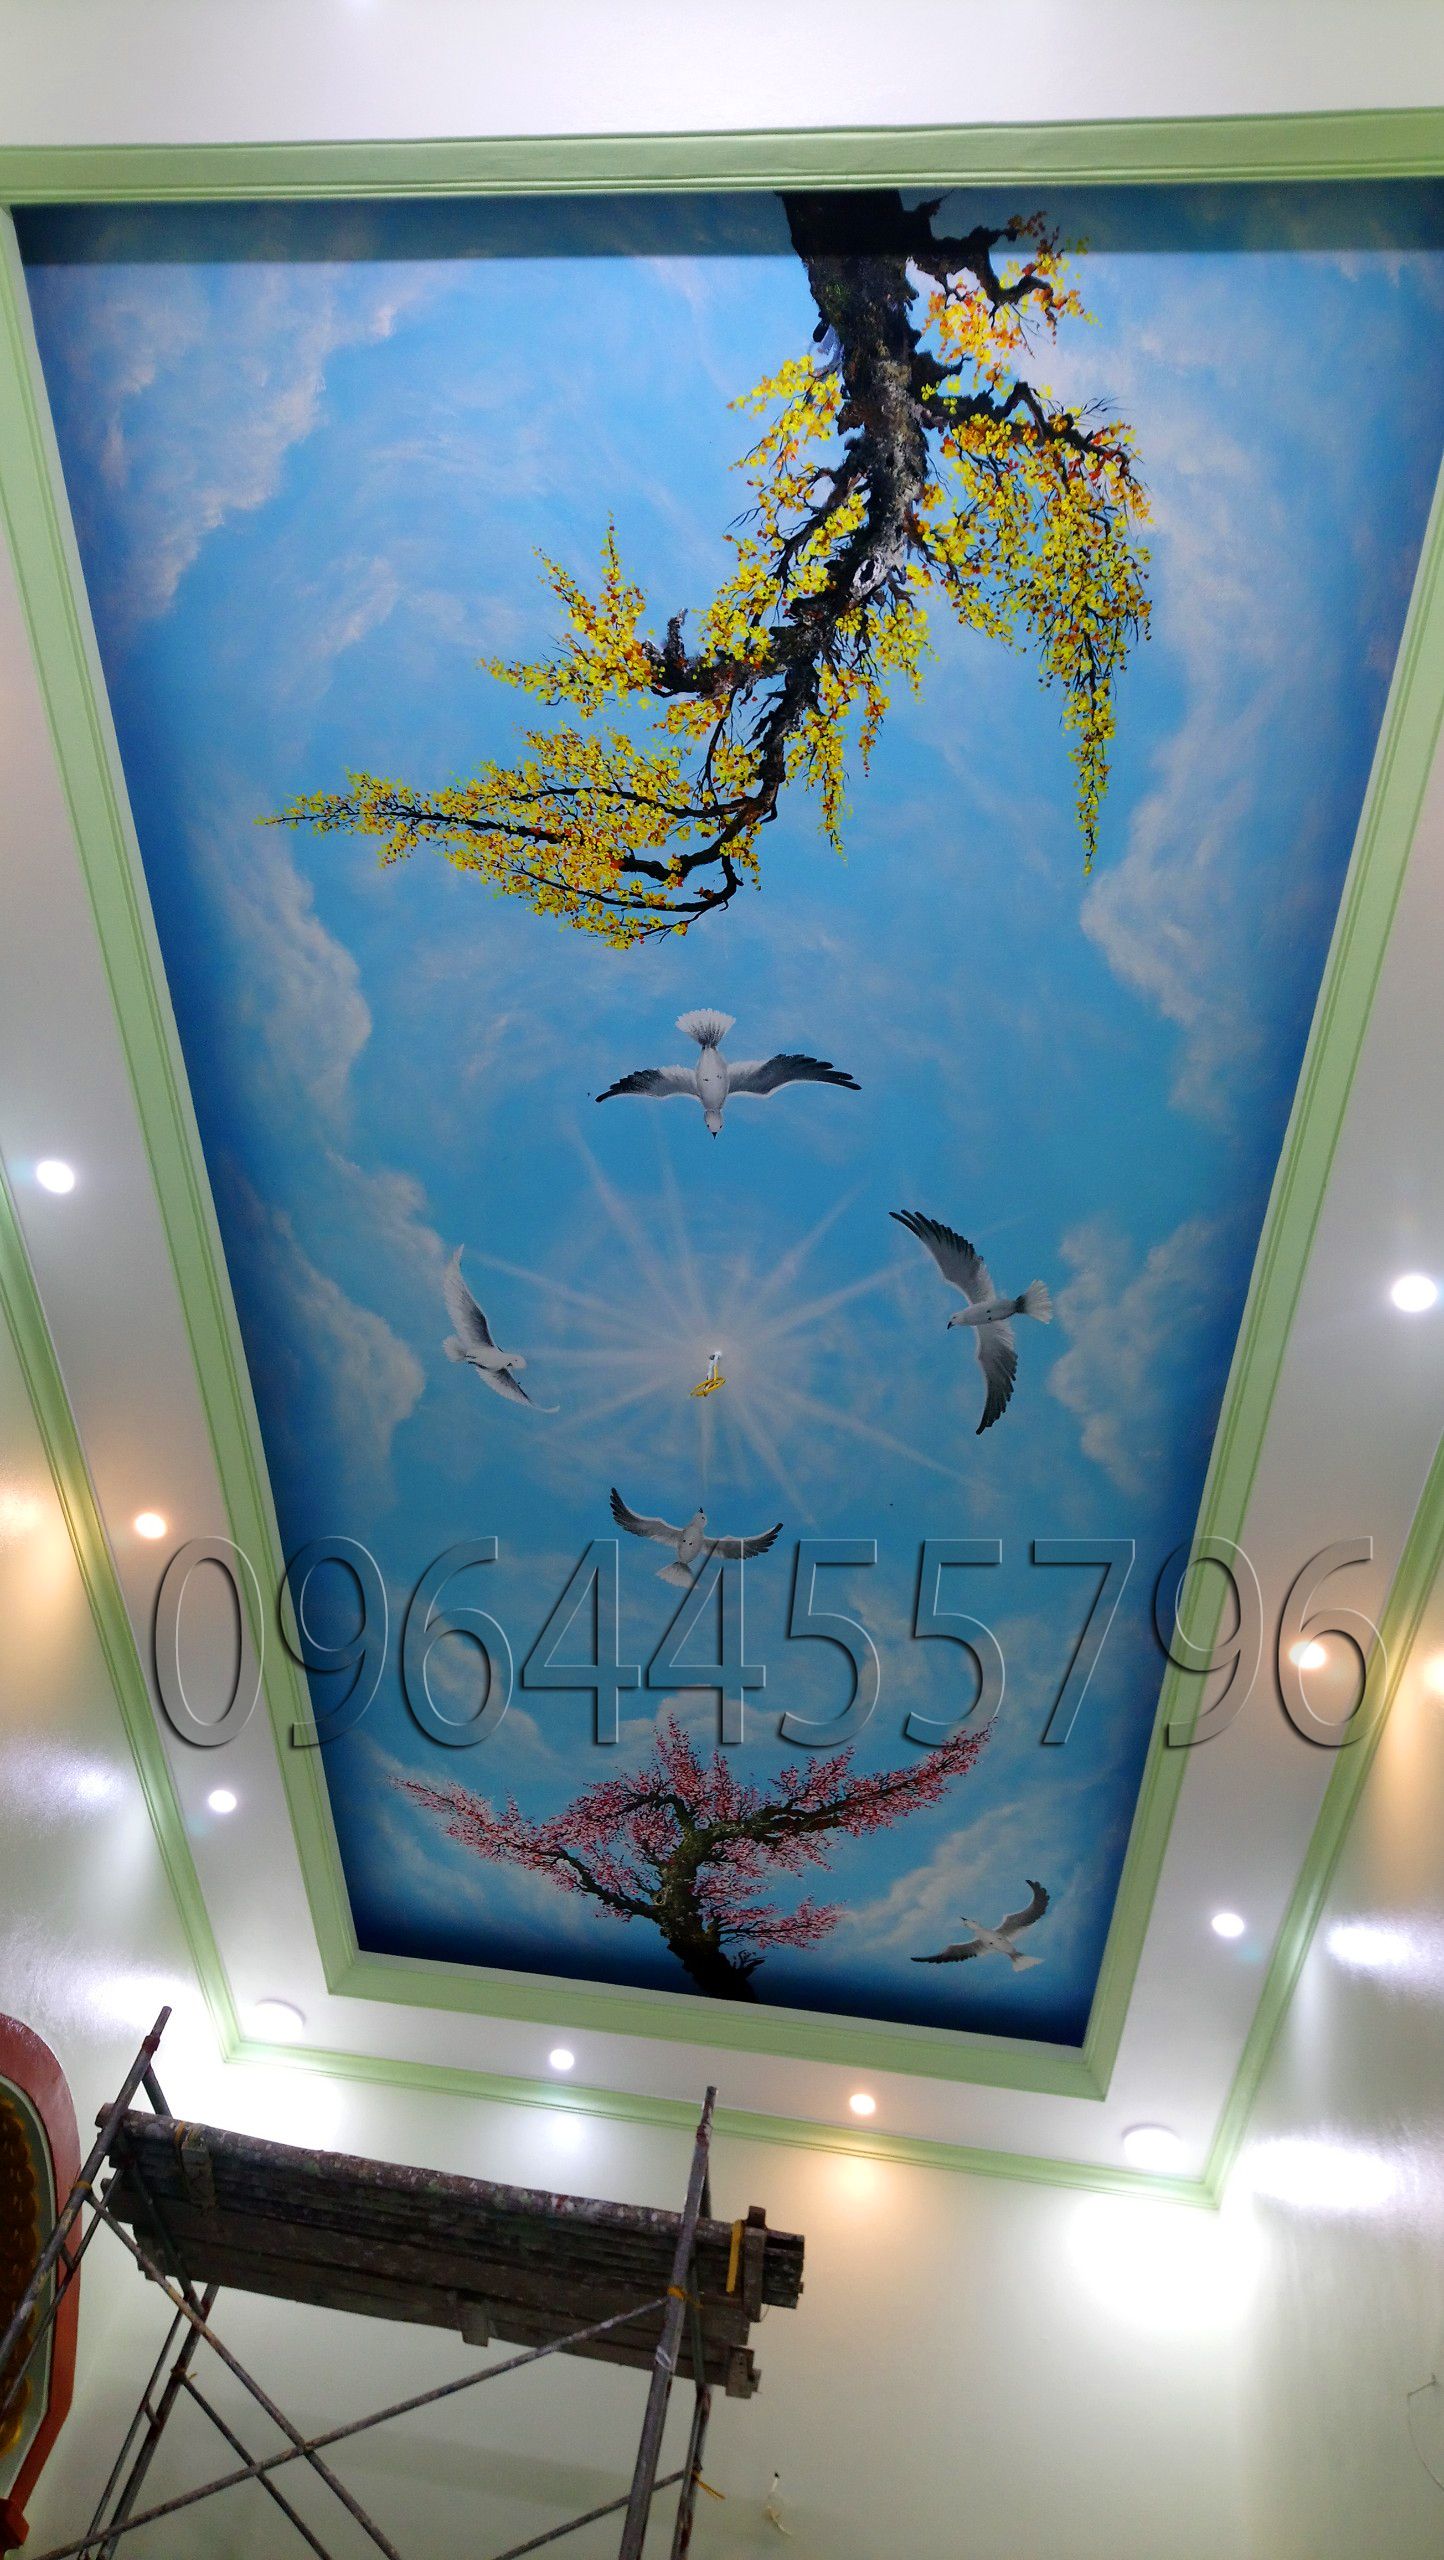 vẽ tranh trần mây 3d tại nam định - Tranh Sơn Dầu Vẽ Tay - Tranh Sơn Mài -  Tường Lam ART - 0964455796